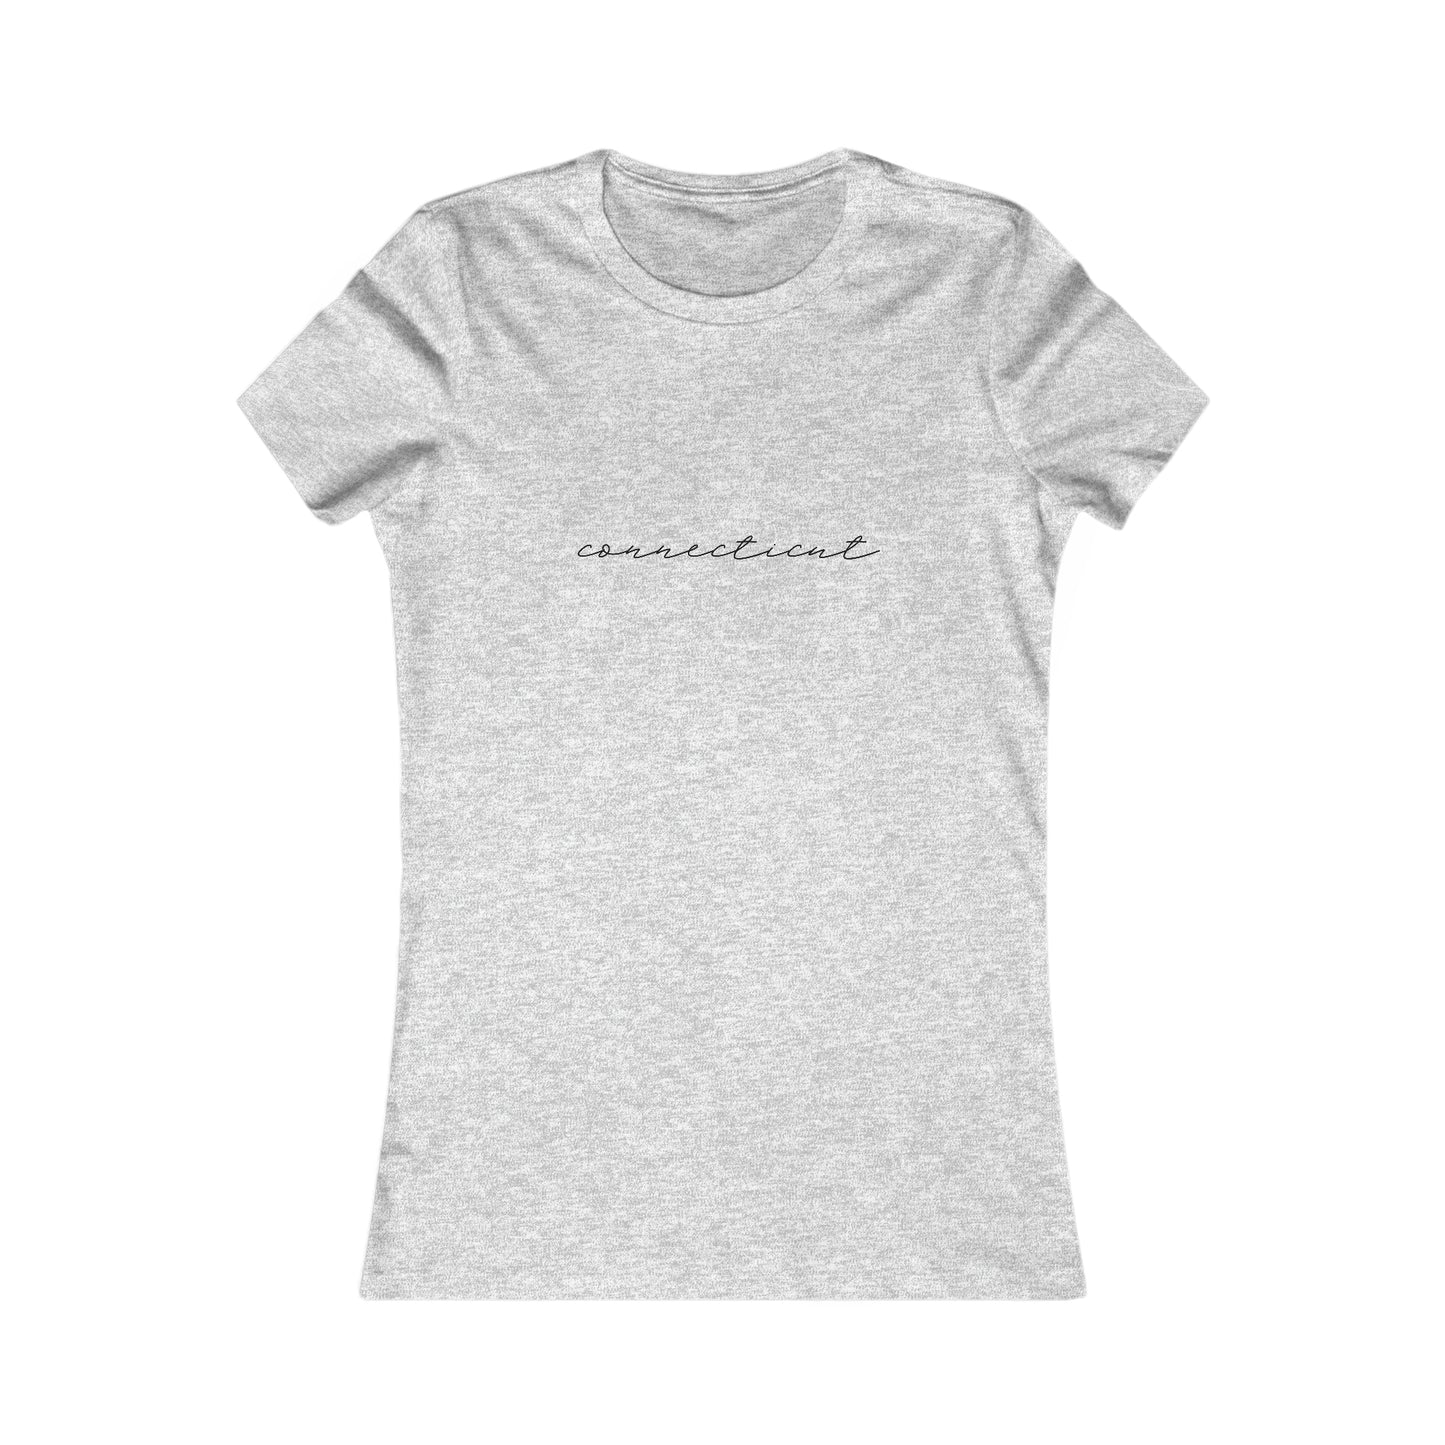 Connecticut Cursive Women's Shirt